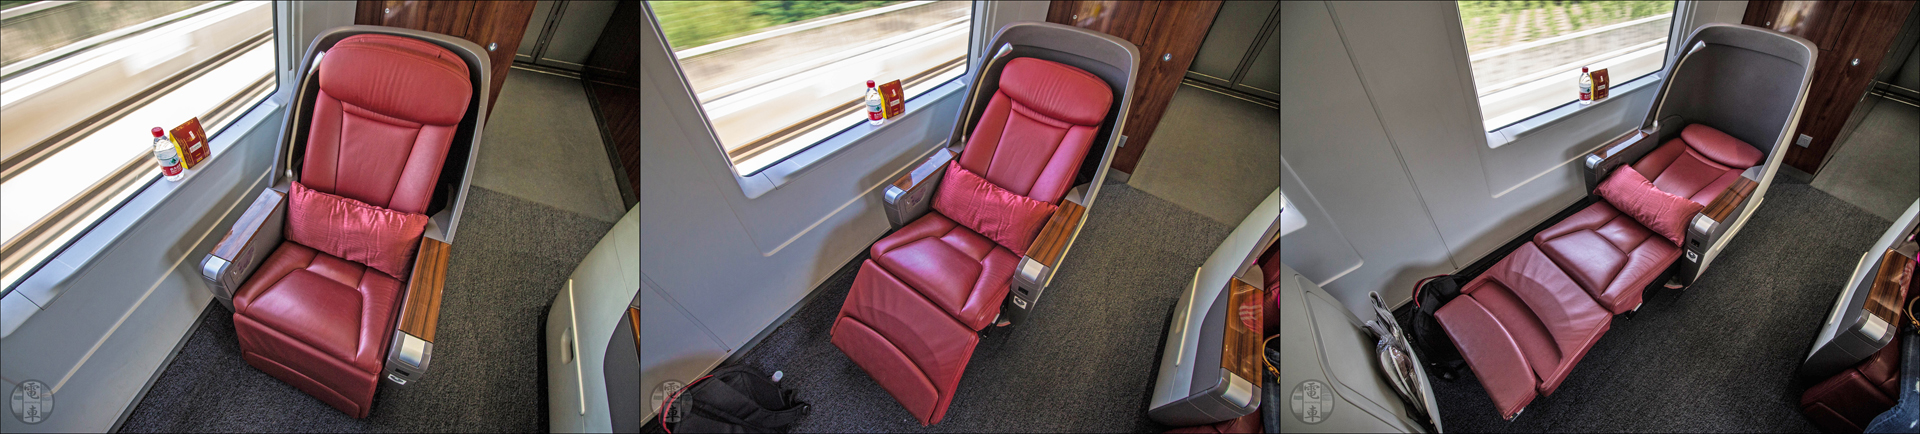 A China Railways CRH380 sorozatú vonatokon található „business class” ülések különböző állásai.